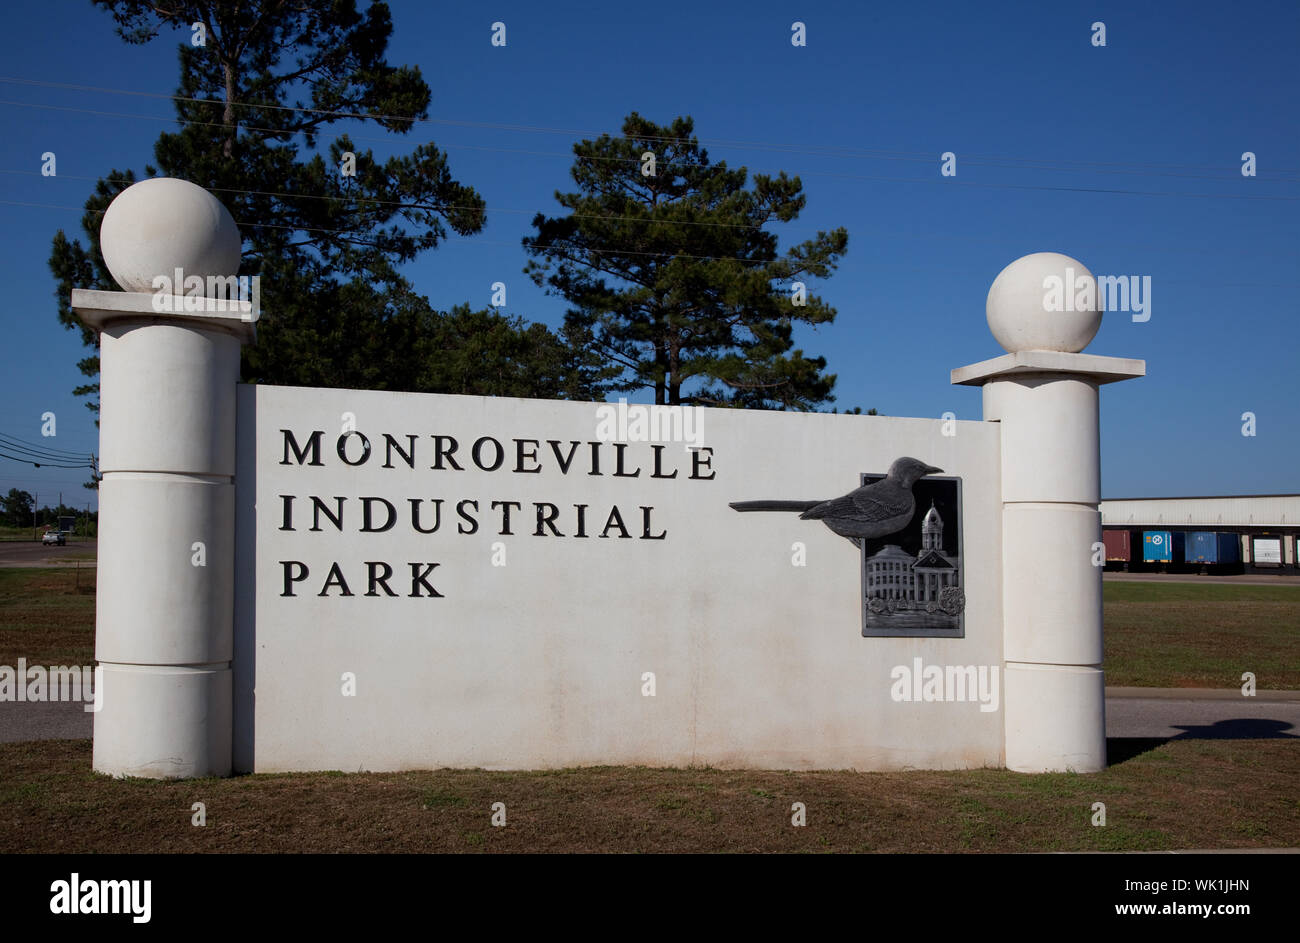 Sito industriale logo in Monroeville, Alabama, mostrando l'uccello e il vecchio Monroe County Courthouse utilizzata nel gioco per uccidere un Mockingbird da parte di un residente Harper Lee Foto Stock